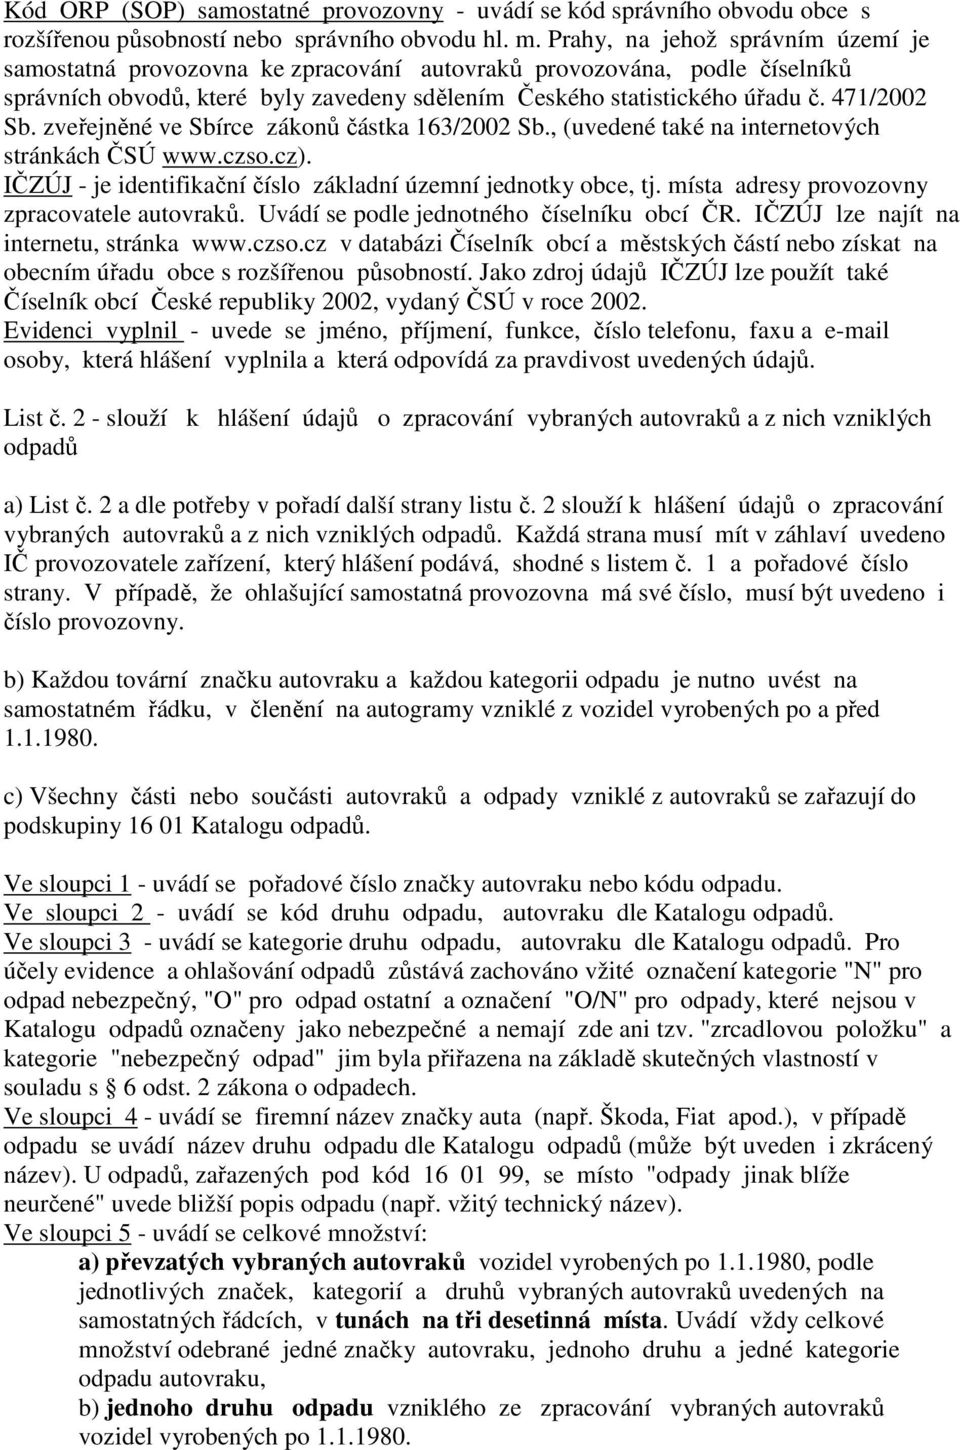 zveřejněné ve Sbírce zákonů částka 163/2002 Sb., (uvedené také na internetových stránkách ČSÚ www.czso.cz). IČZÚJ - je identifikační číslo základní územní jednotky obce, tj.